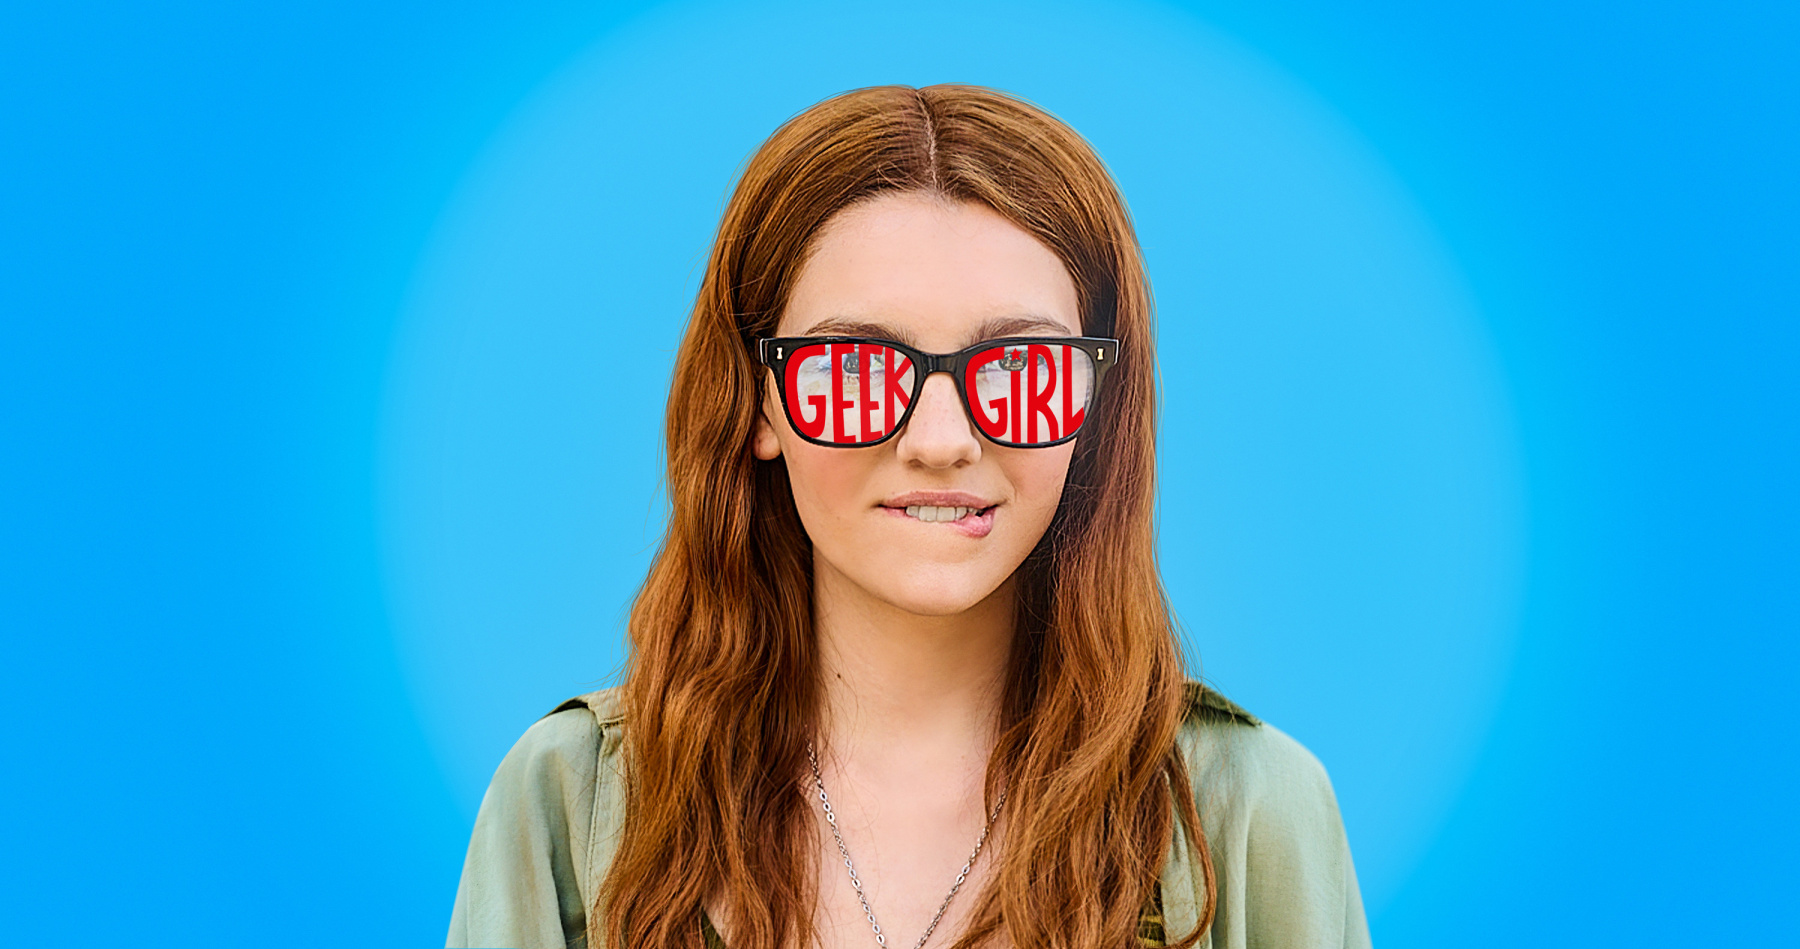 Geek Girl é uma das principais estreias da Netflix nesta semana